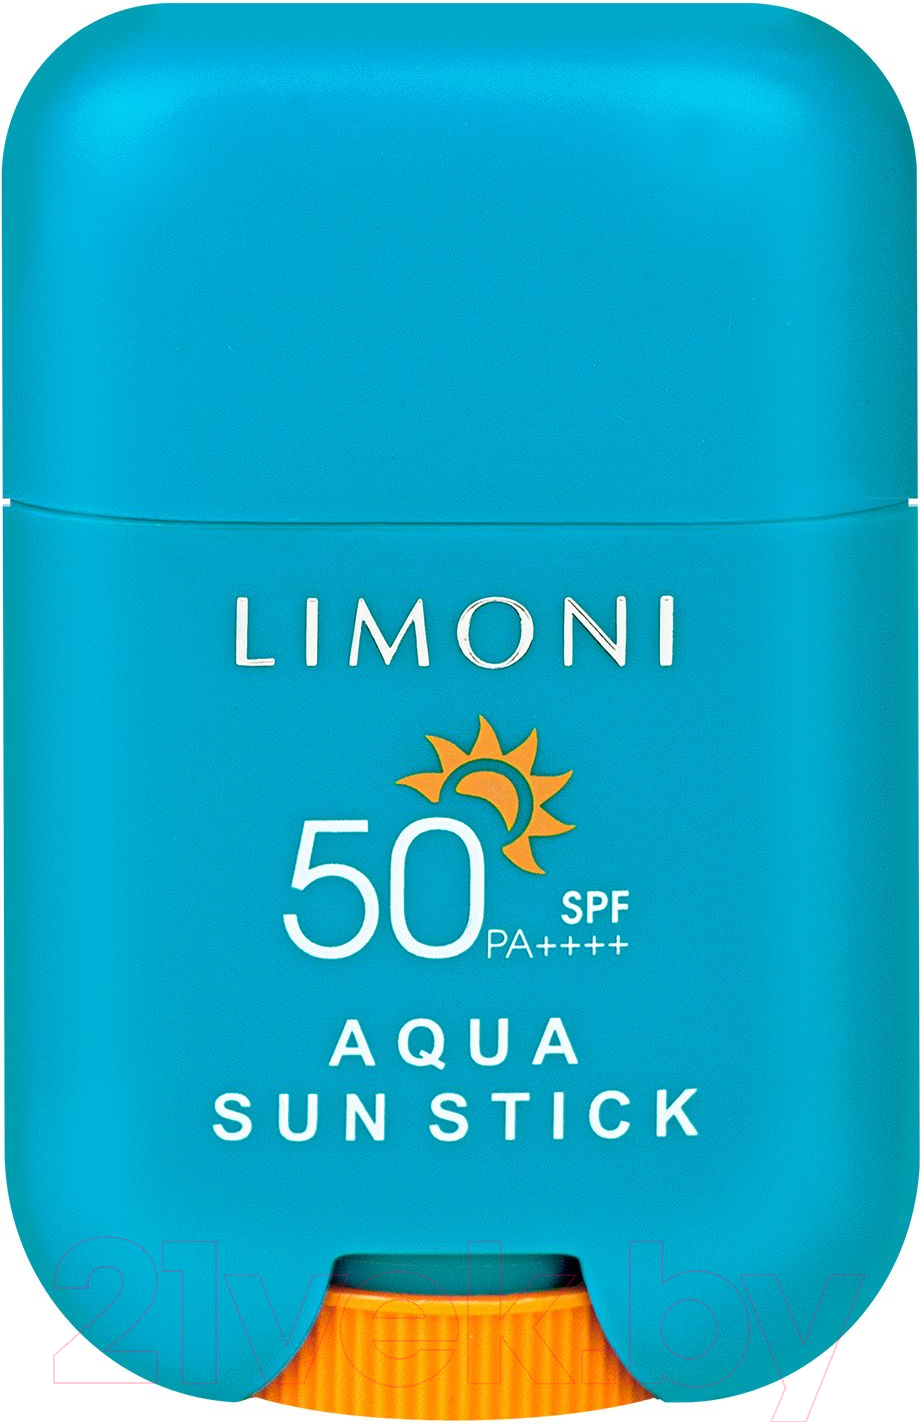 Крем солнцезащитный Limoni Aqua Sun Stick SPF 50+ РА++++ Стик